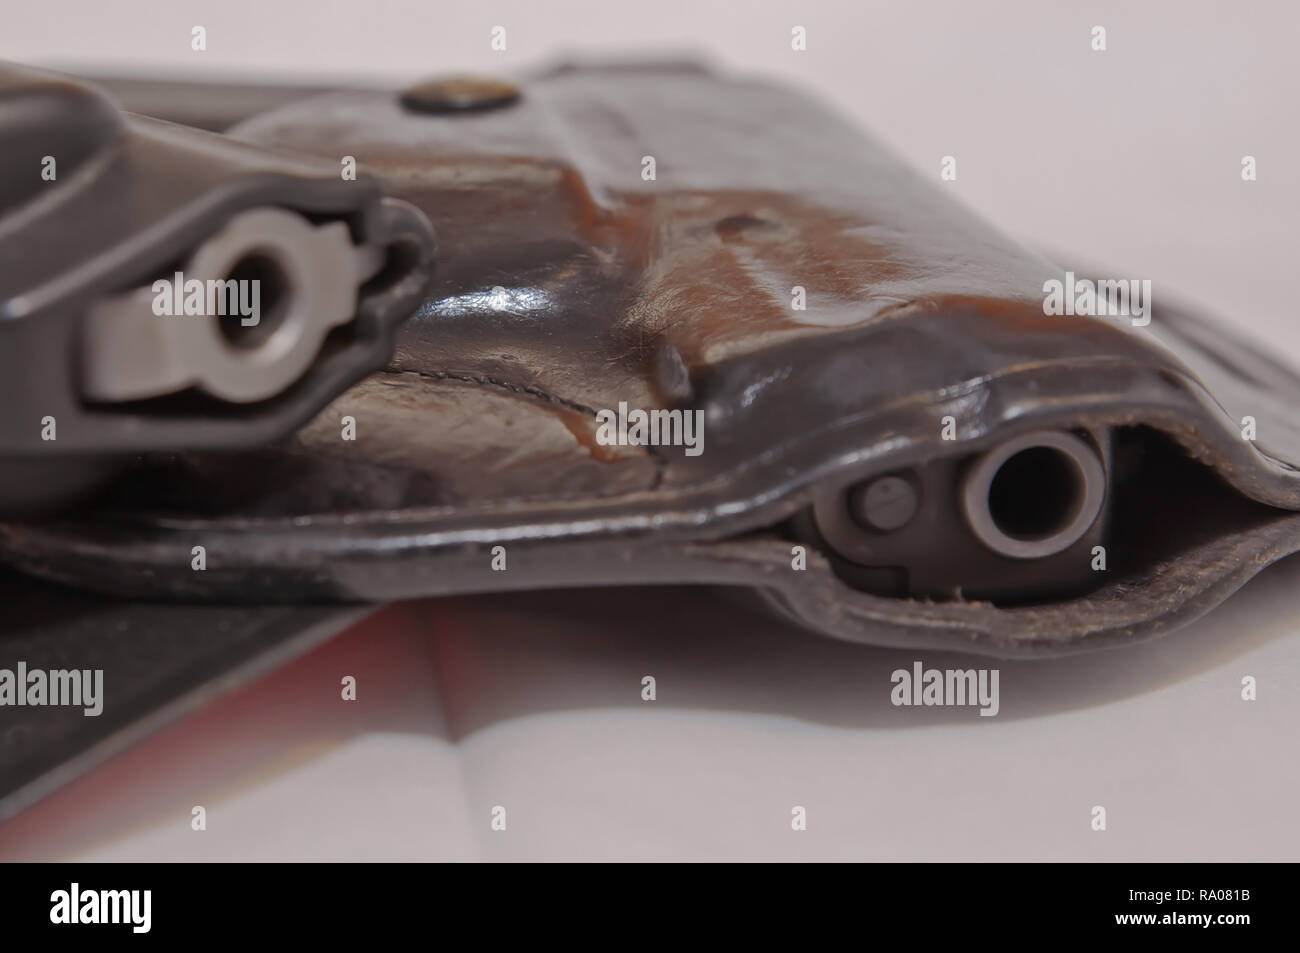 Due pistole, un argento 357 revolver Magnum sulla parte superiore di un nero 9mm pistola su uno sfondo bianco. Entrambi mostrati in nero custodie Foto Stock